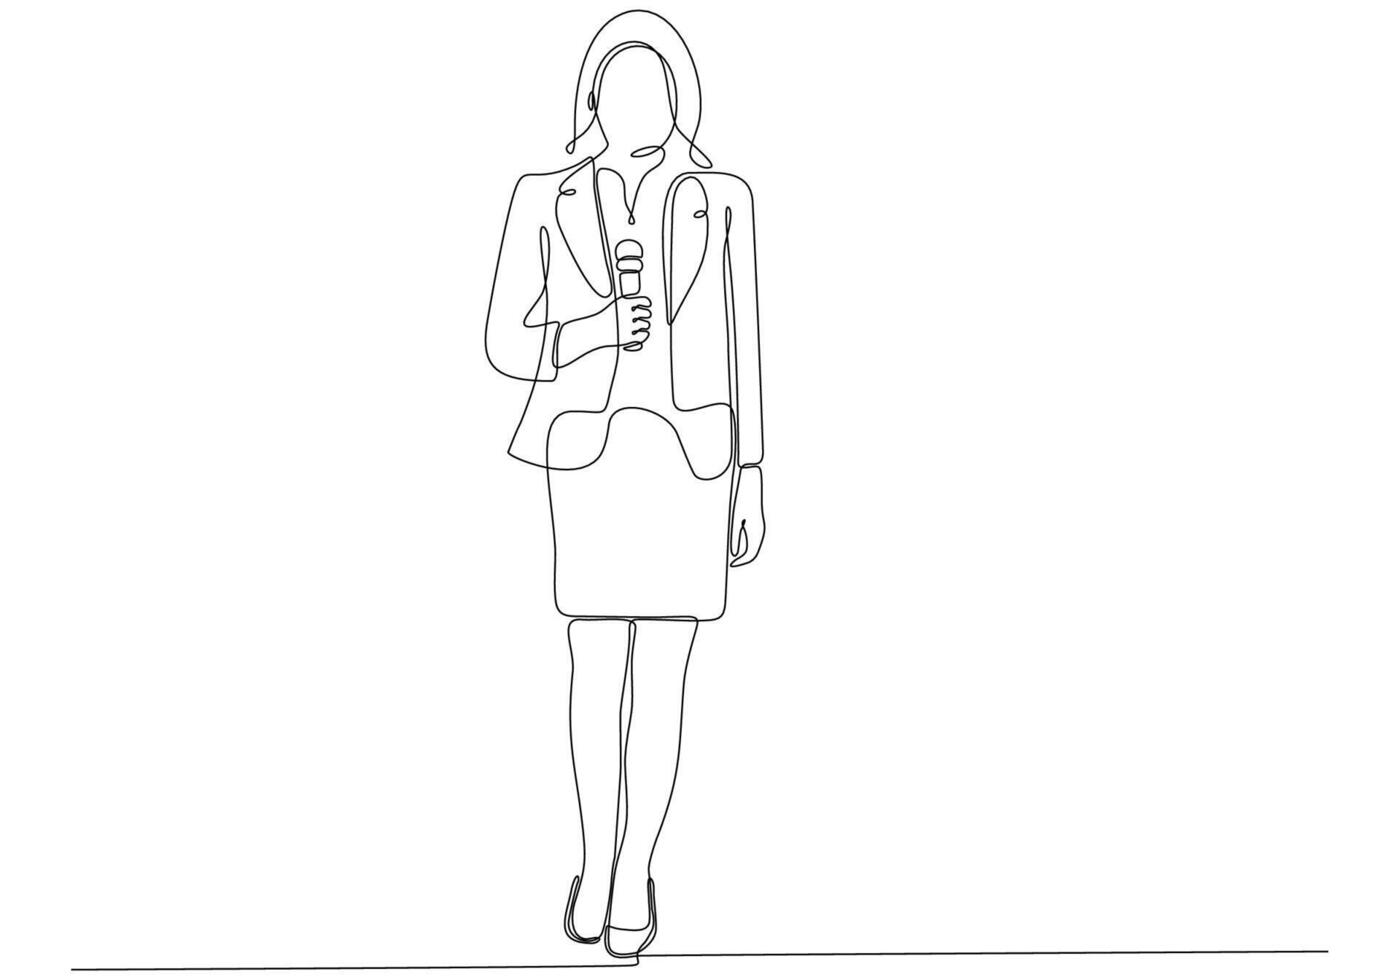 dessin au trait continu d'une femme tenant un microphone, illustration vectorielle de journaliste symbole vecteur